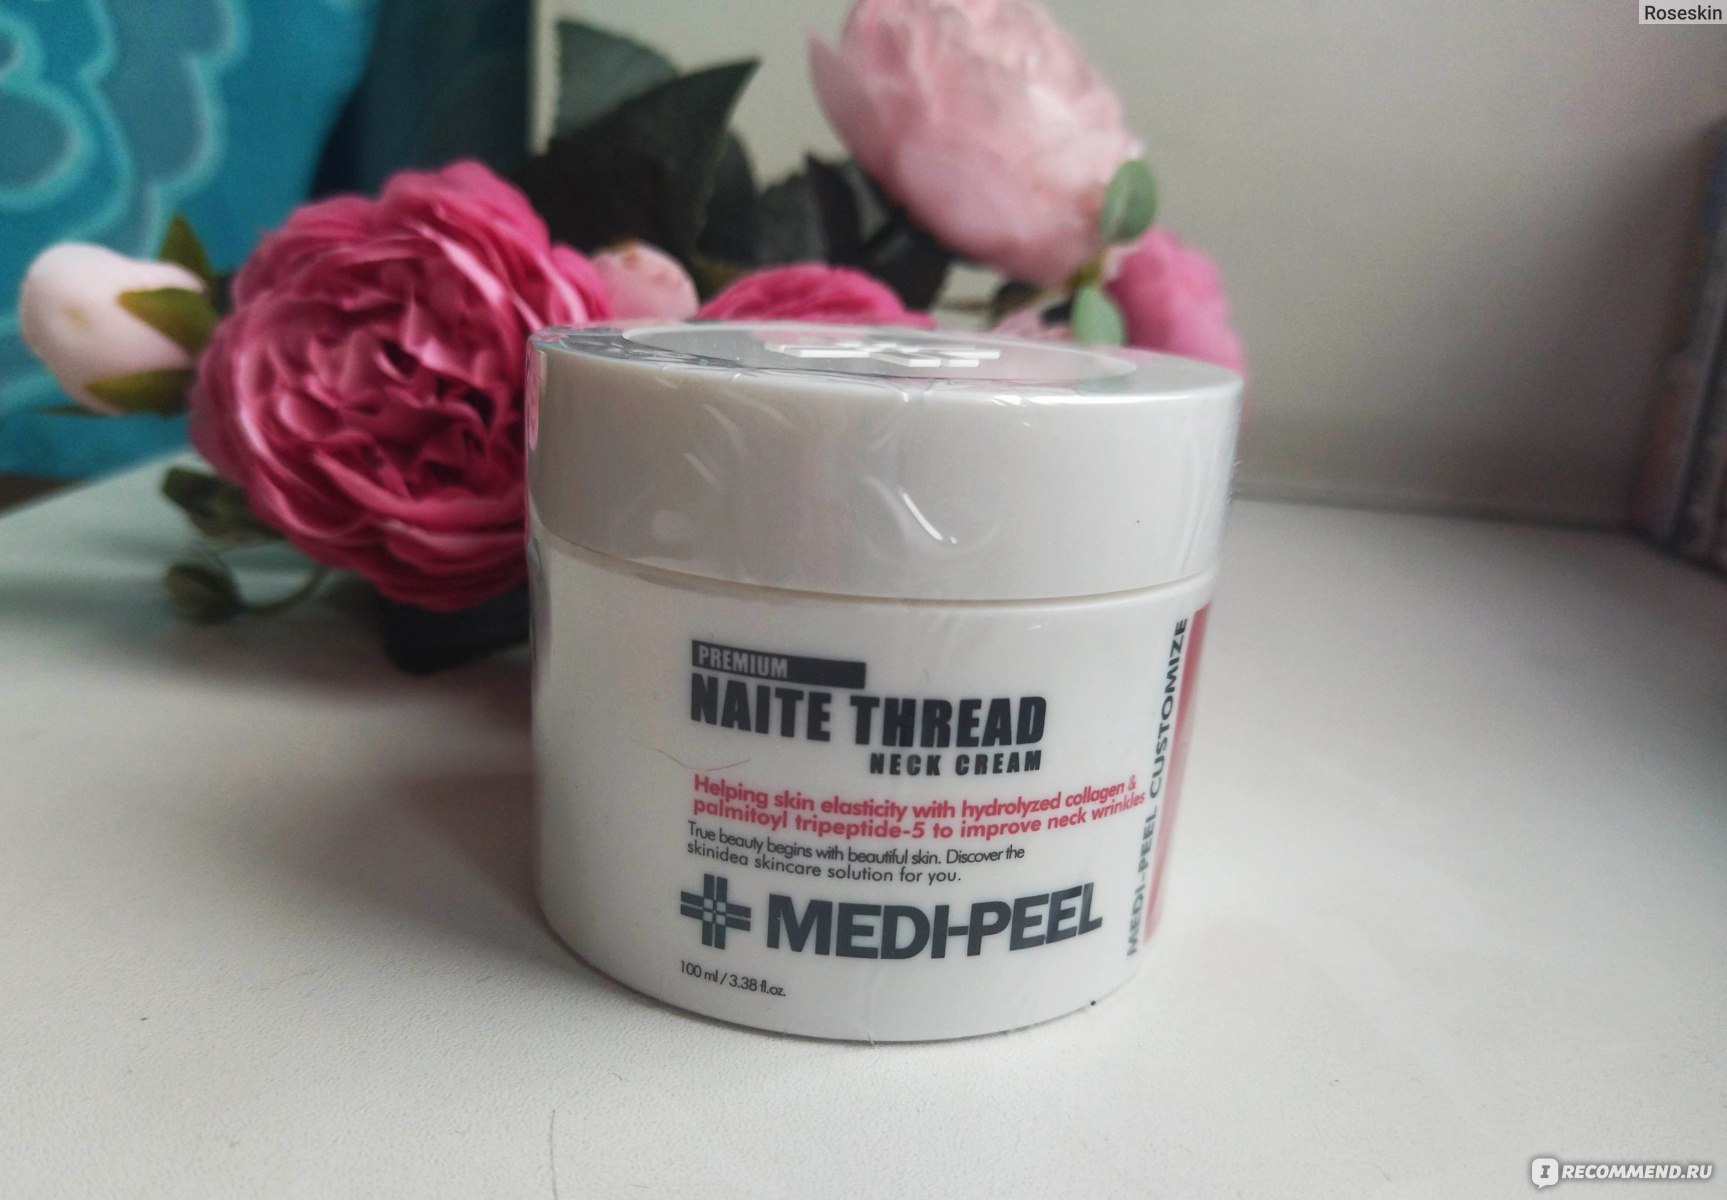 Крем для шеи Medi-peel Naite Thread Neck Cream  фото